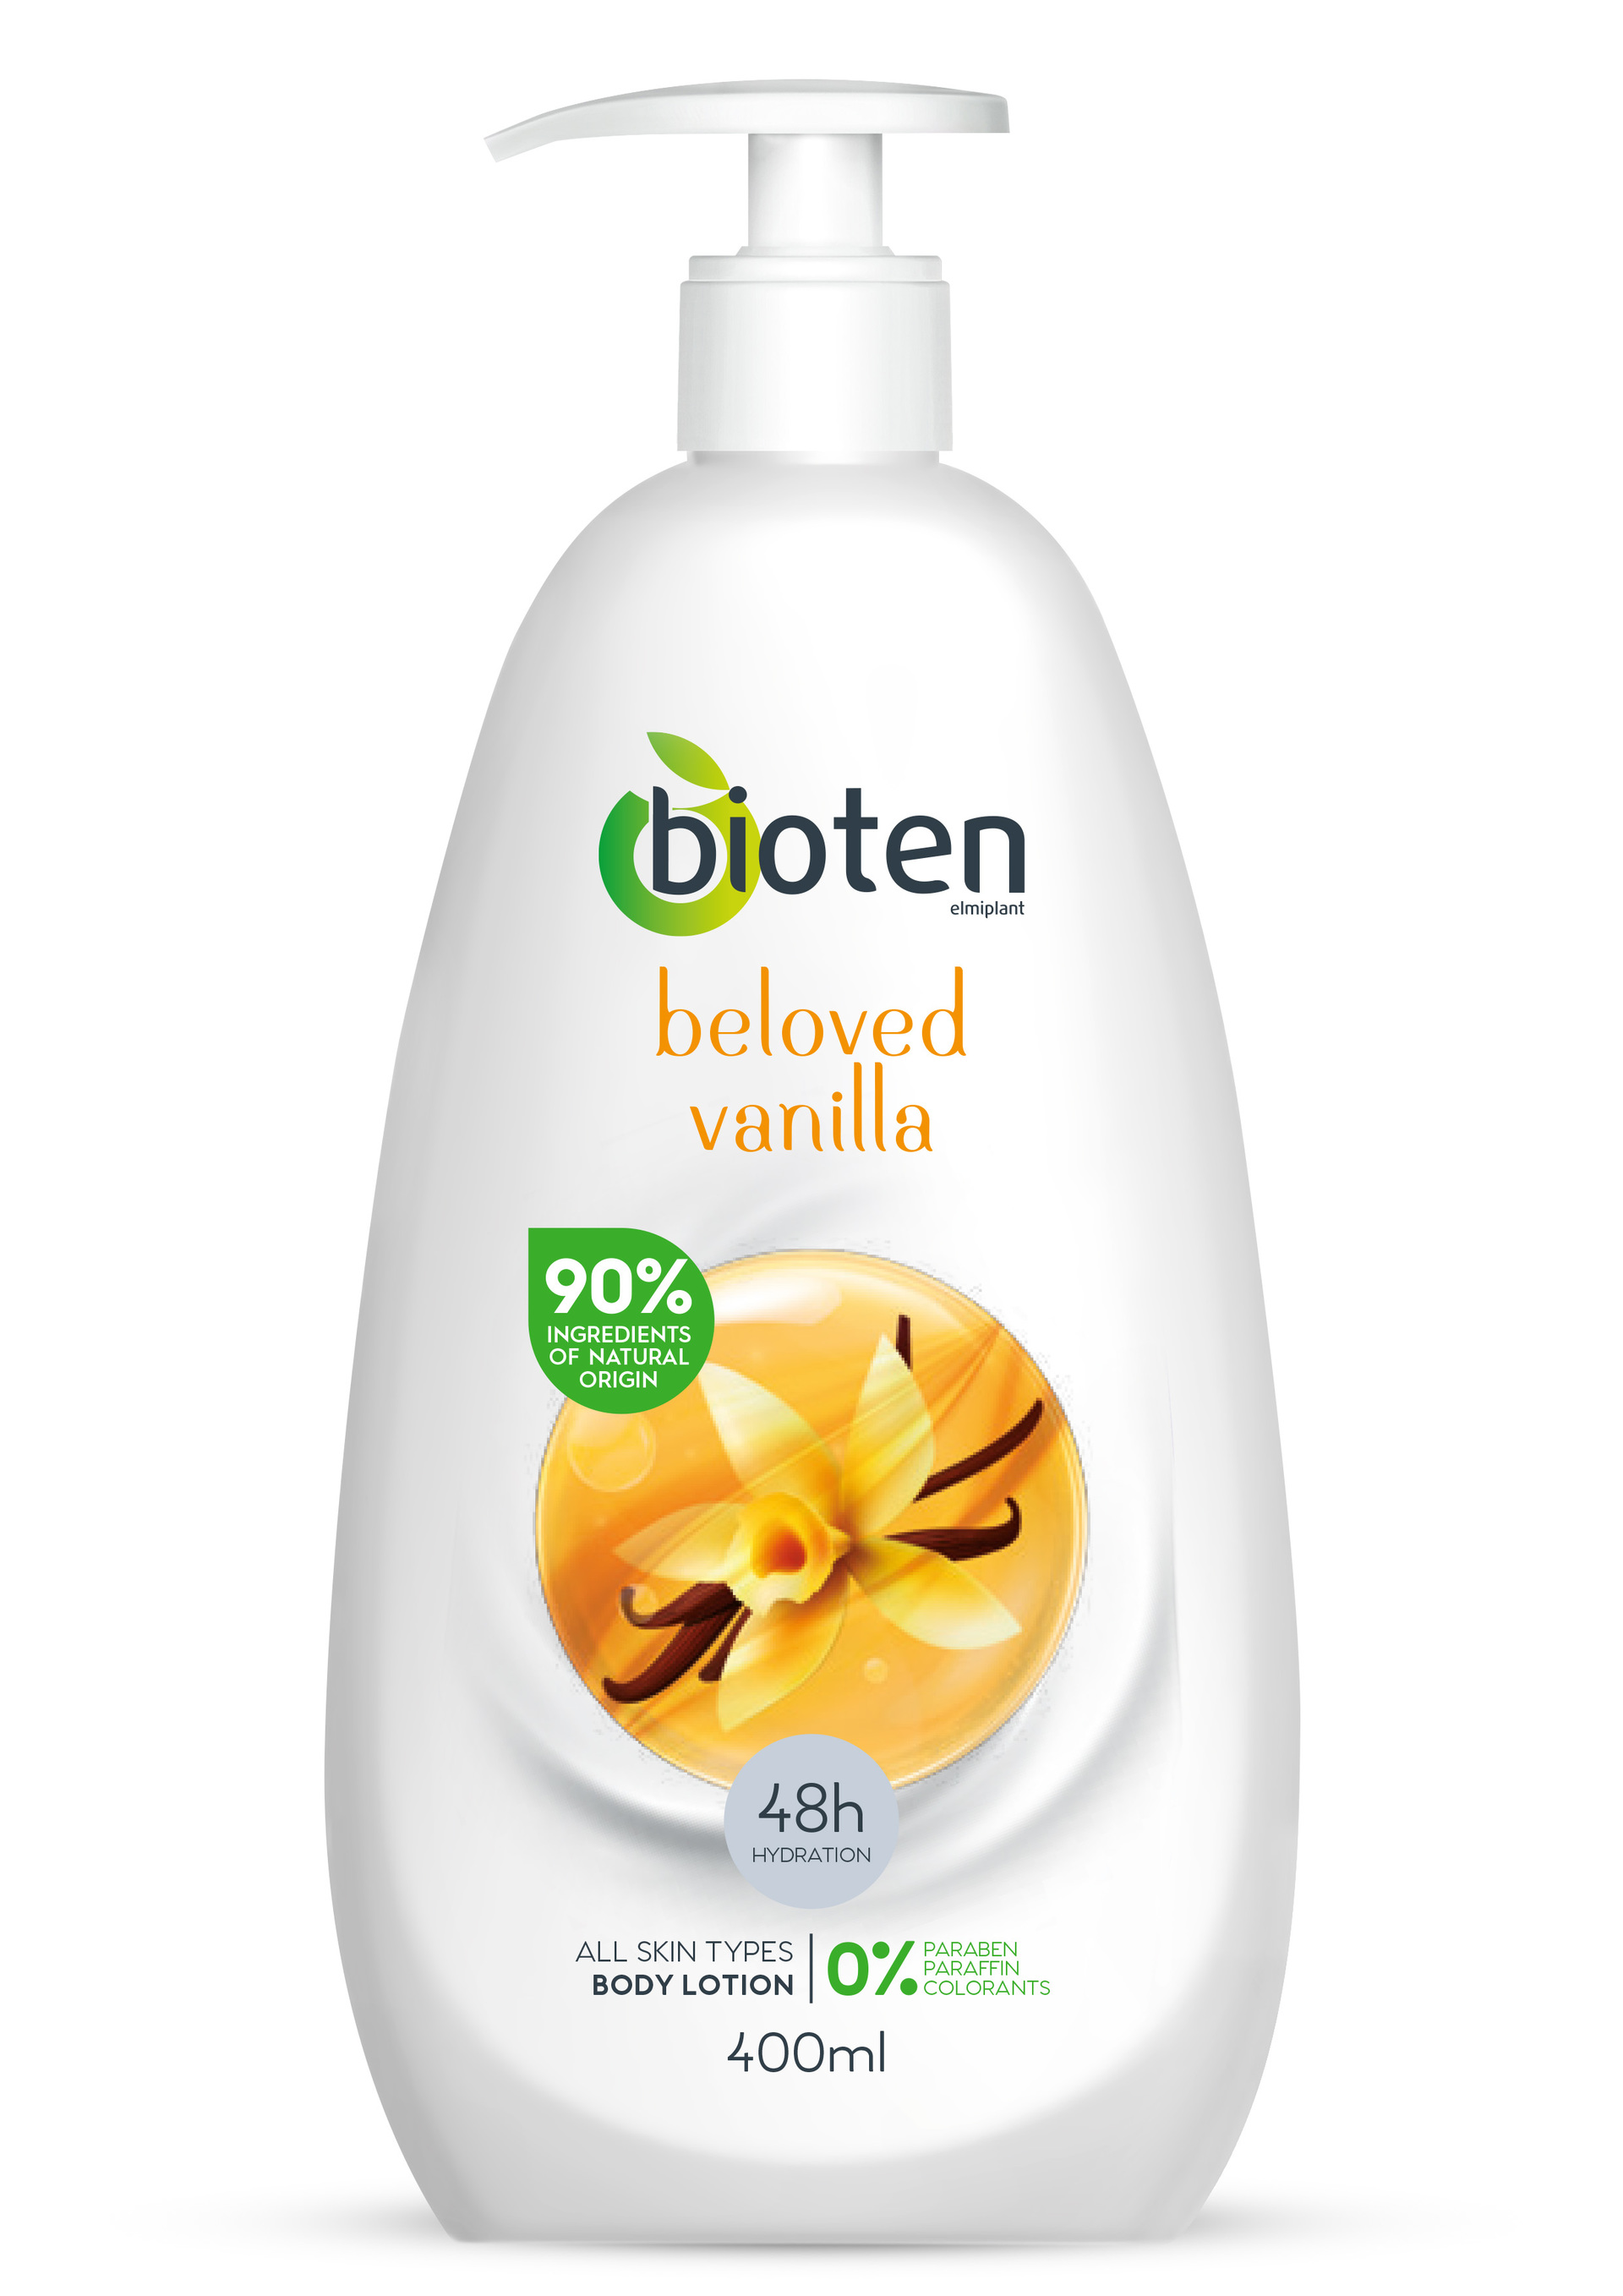 bioten beloved vanilla 400ml